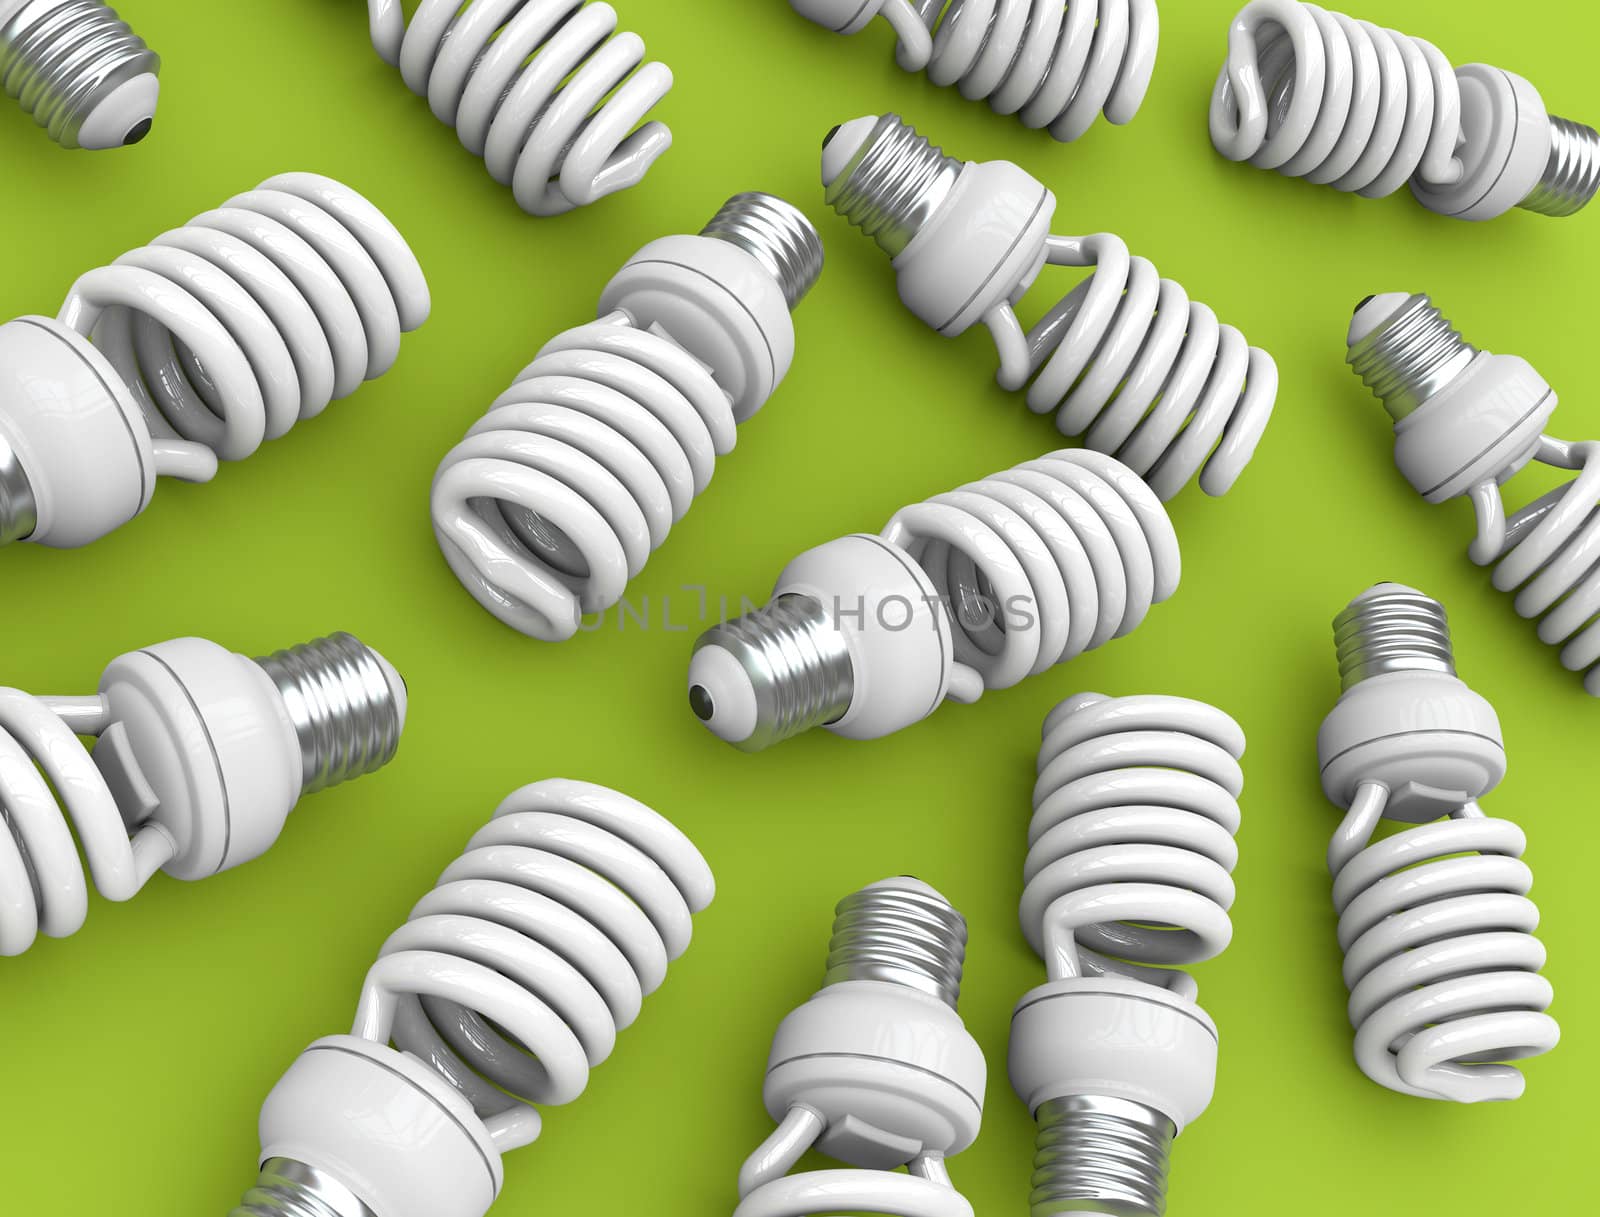 Energy efficient light bulbs on green plane. 3D rendered illustration.